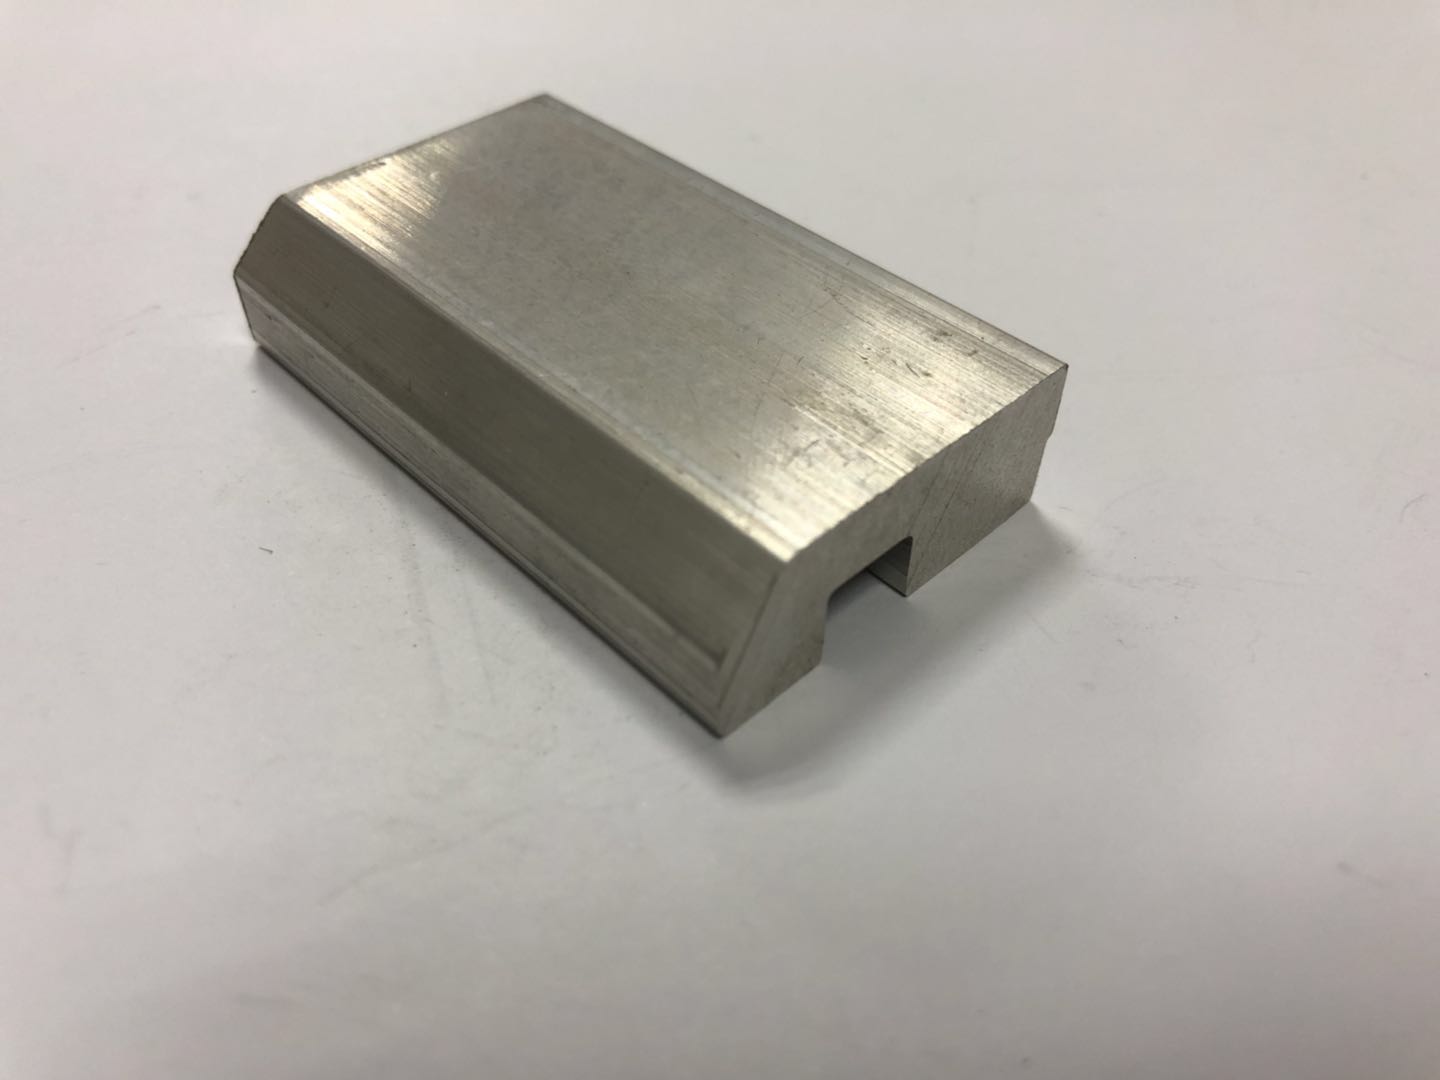 通讯固定块铝材 华为通讯固定块铝材